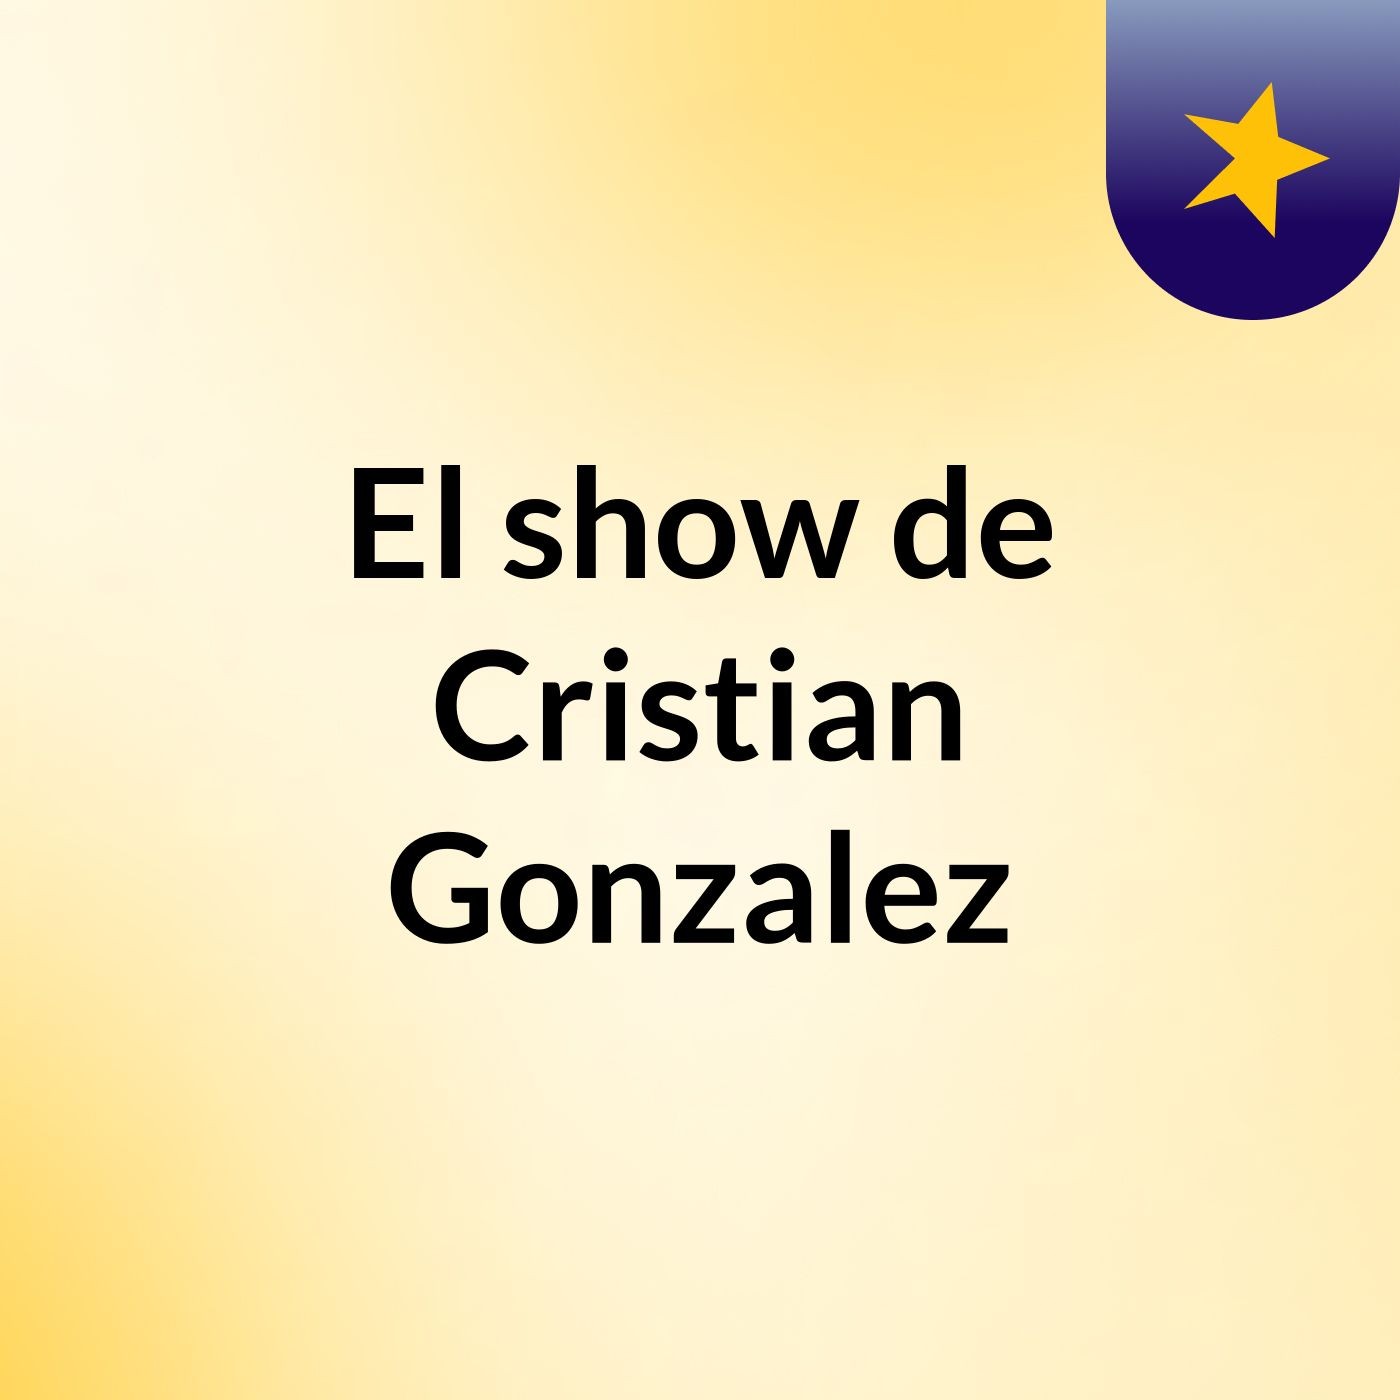 El show de Cristian Gonzalez